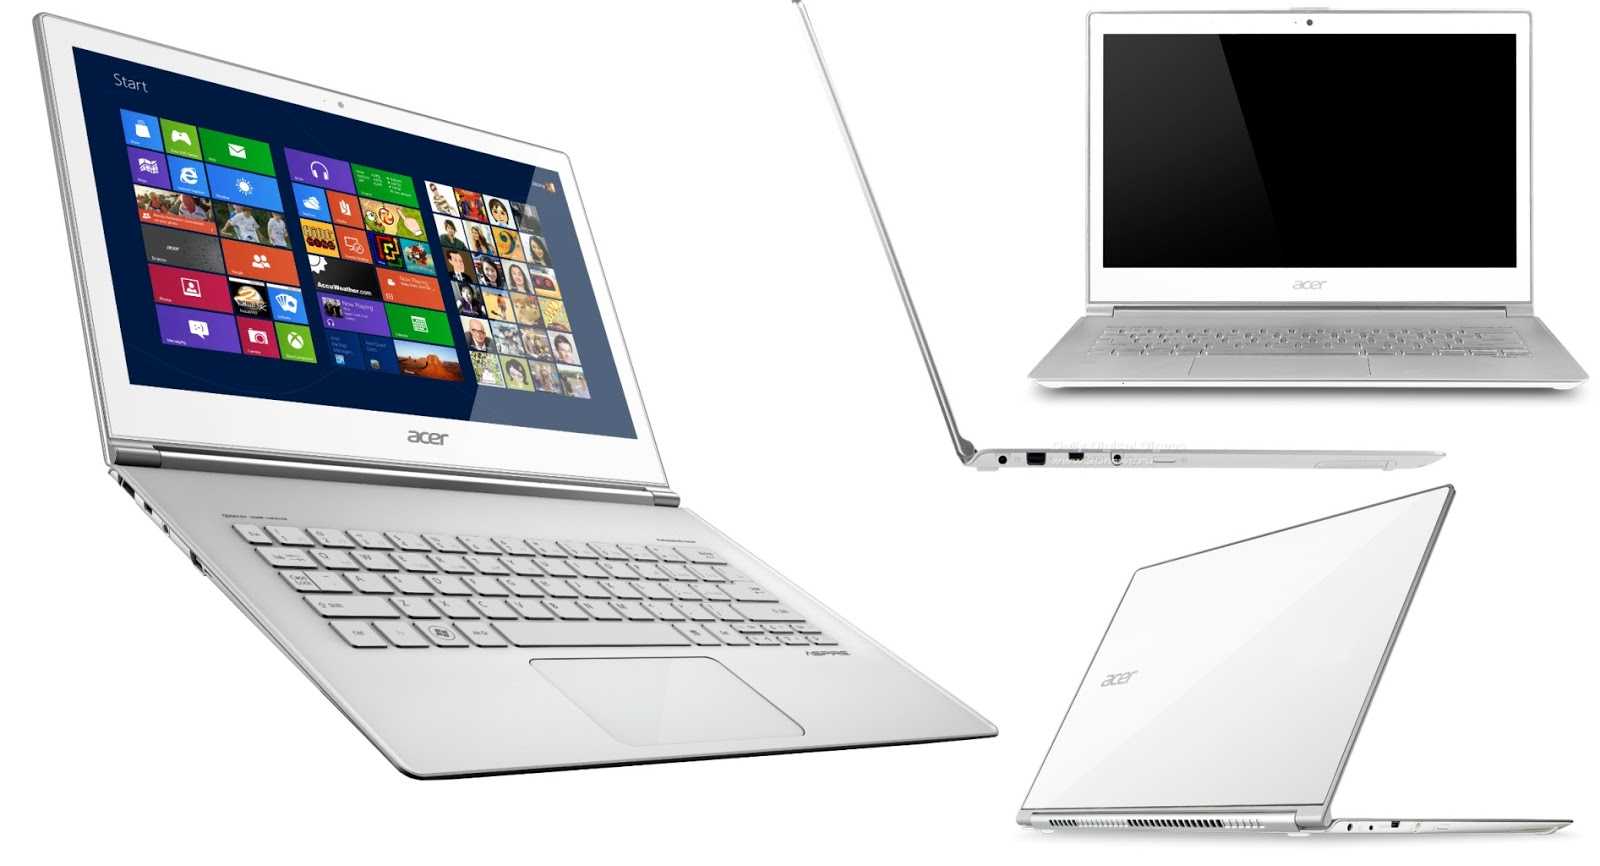 Ноутбук-планшет acer aspire s7 391-73534g25aws — купить, цена и характеристики, отзывы